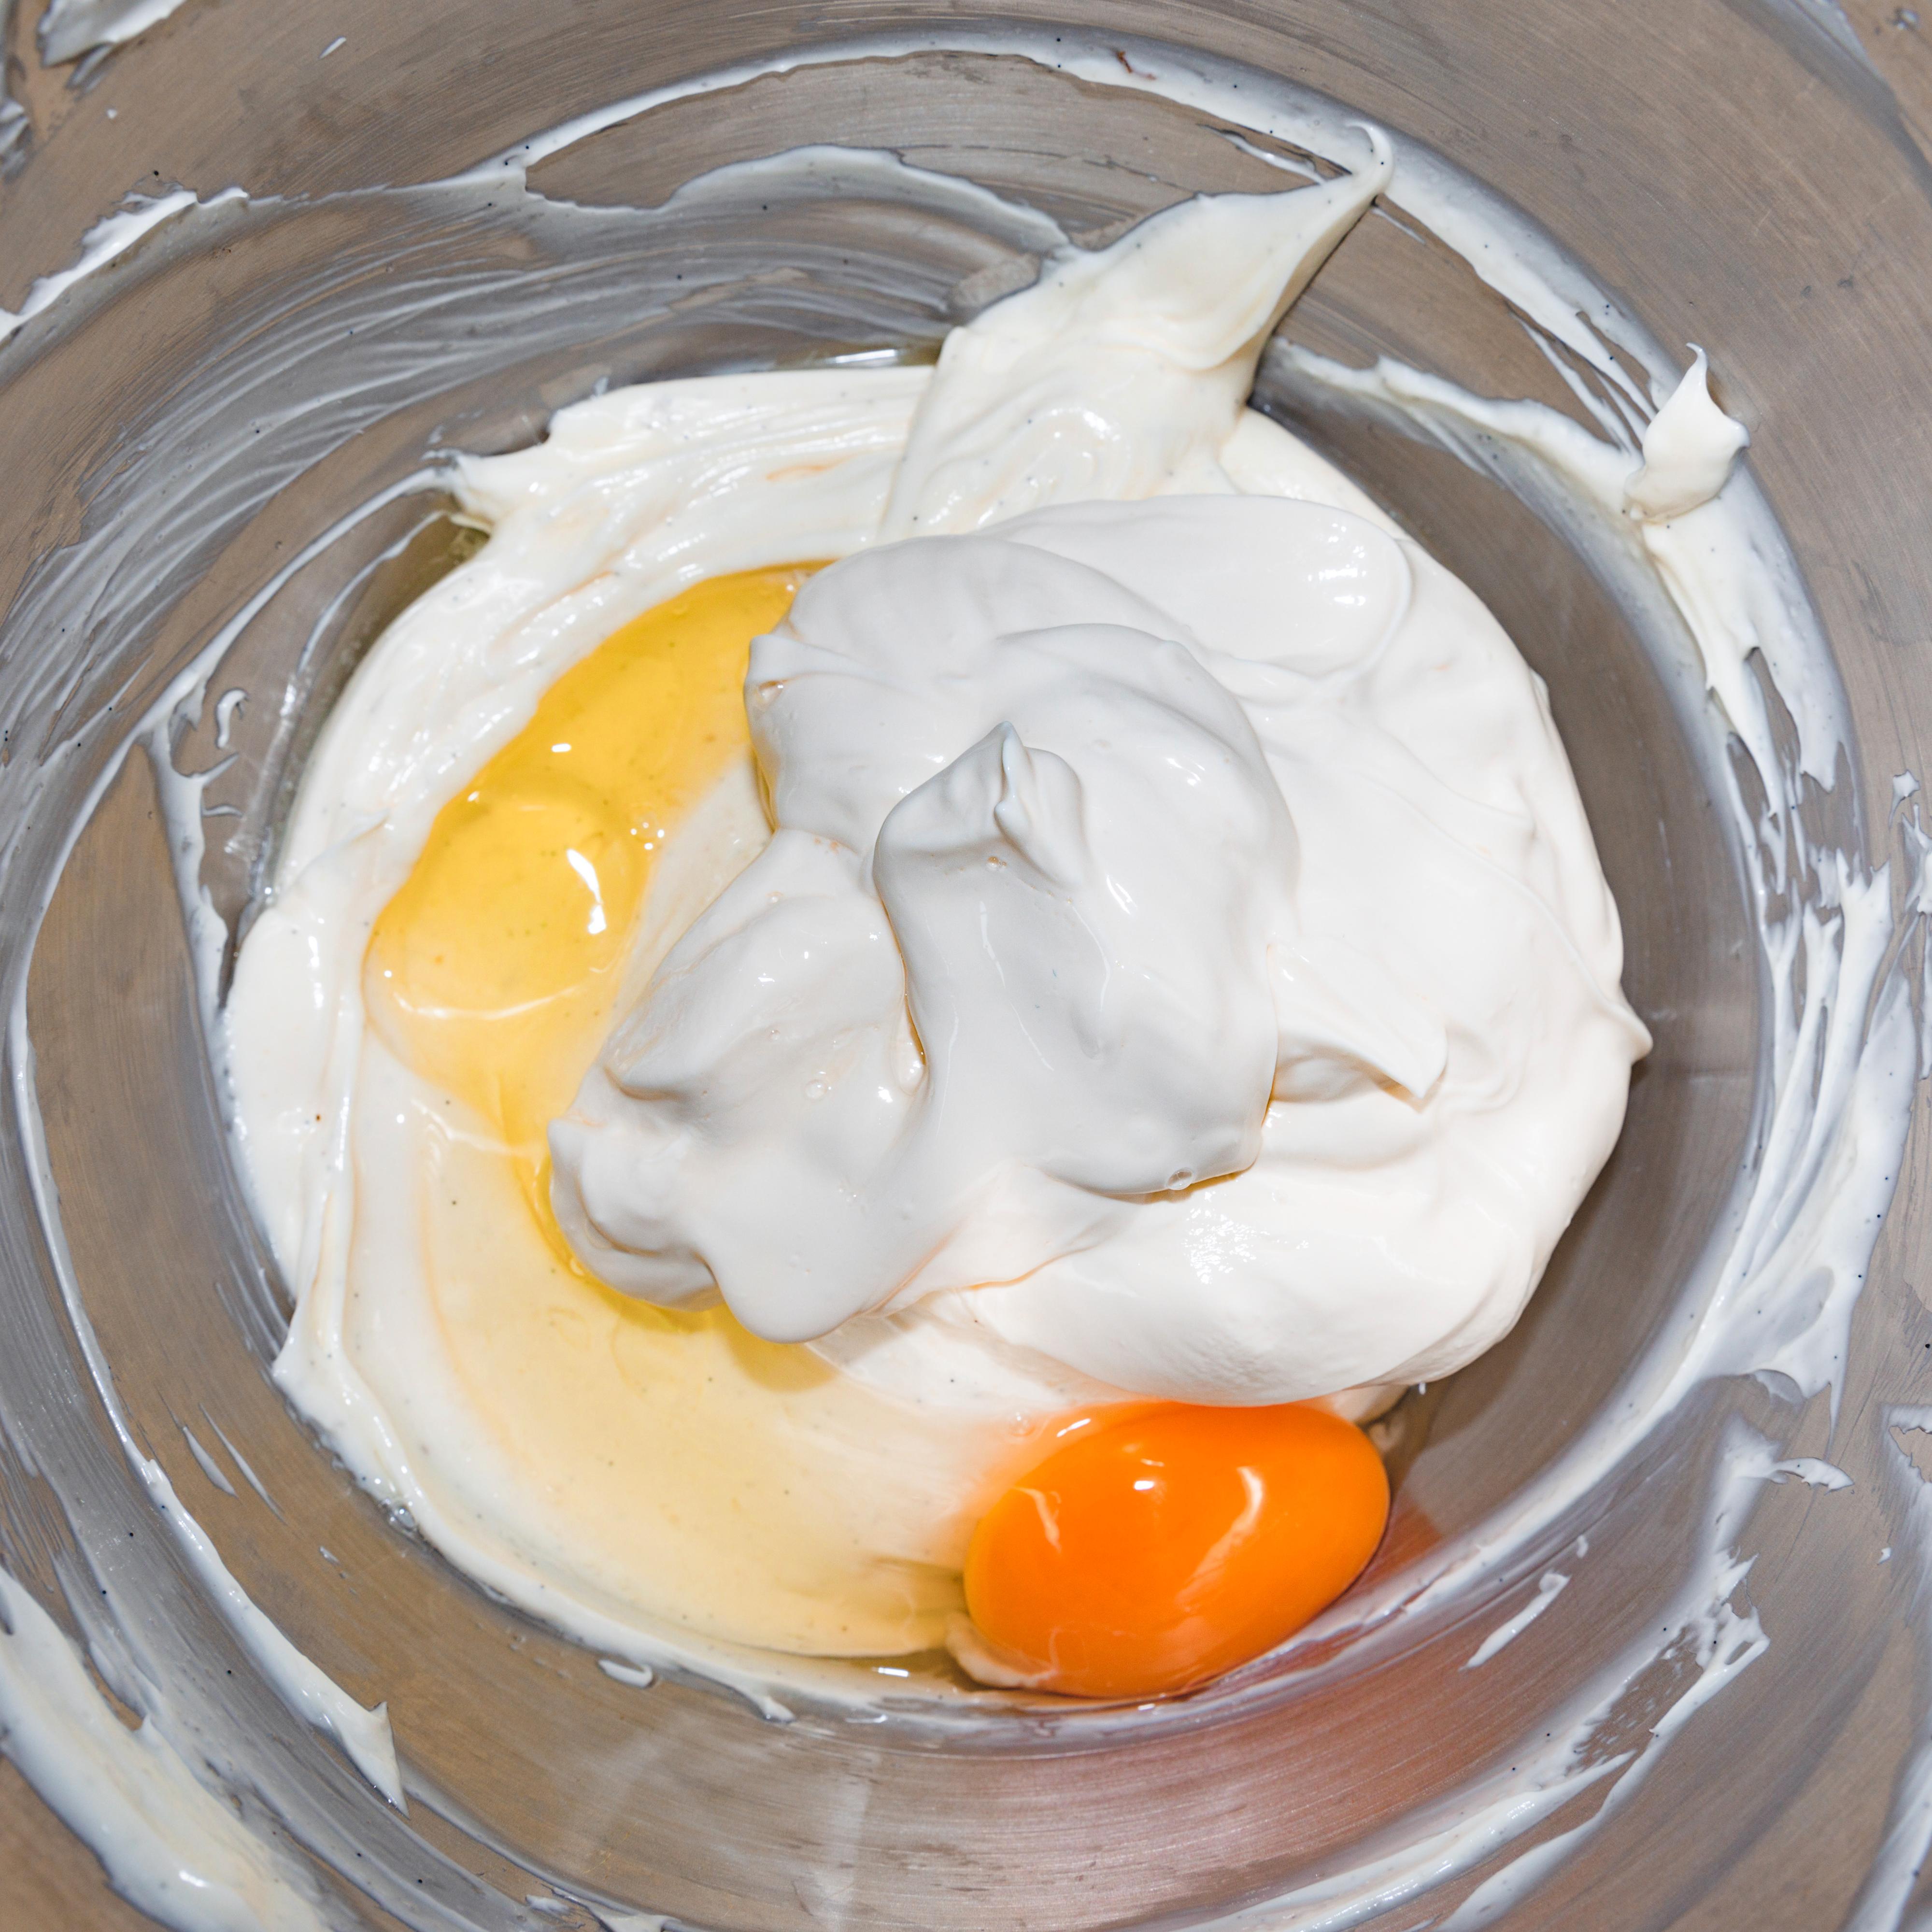 Bruk en kjøkkenmaskin og rør osten glatt og kremet. Visp gradvis inn sukkeret ved lav hastighet. Skrap ned langs kantene, tilsett frøene fra vaniljestangen og rømme. Visp alt godt sammen og visp inn ett og ett egg og eggeplommen. Ikke rør for mye etter at eggene er tilsatt.